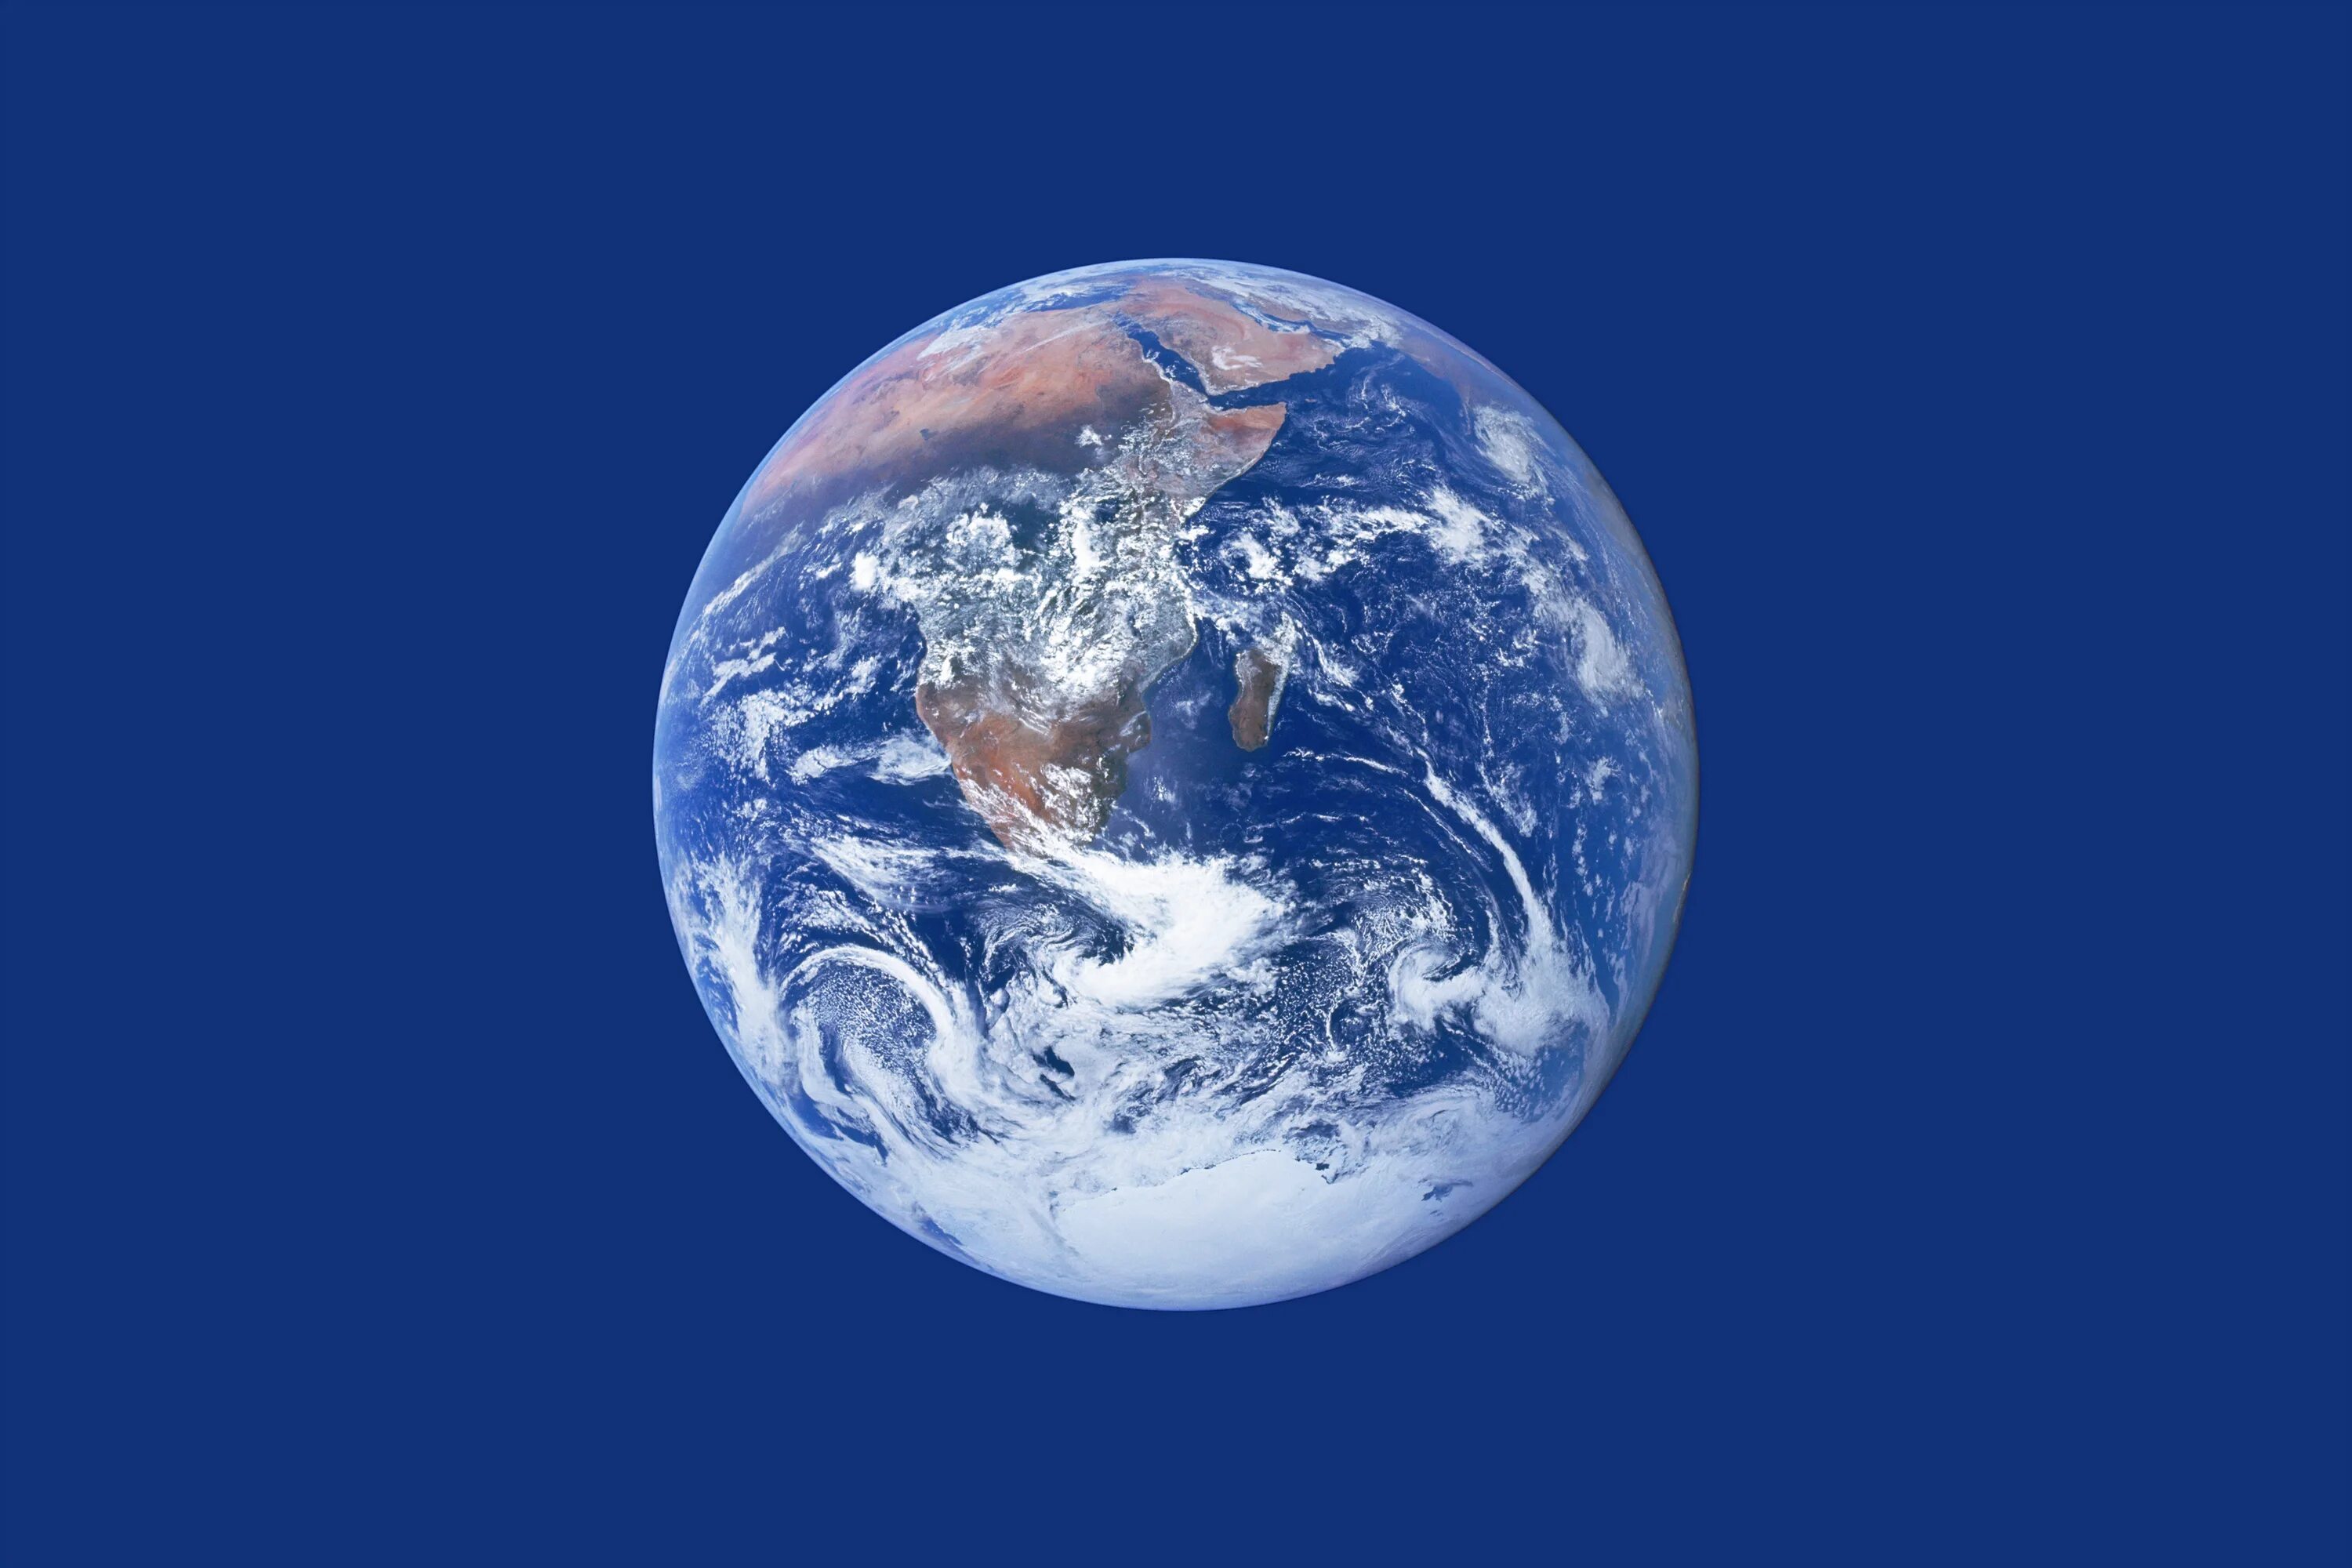 Флаг дня земли. PSR b1257+12 a. PSR b1257+12 c. Планета земля. Земля Планета солнечной системы.